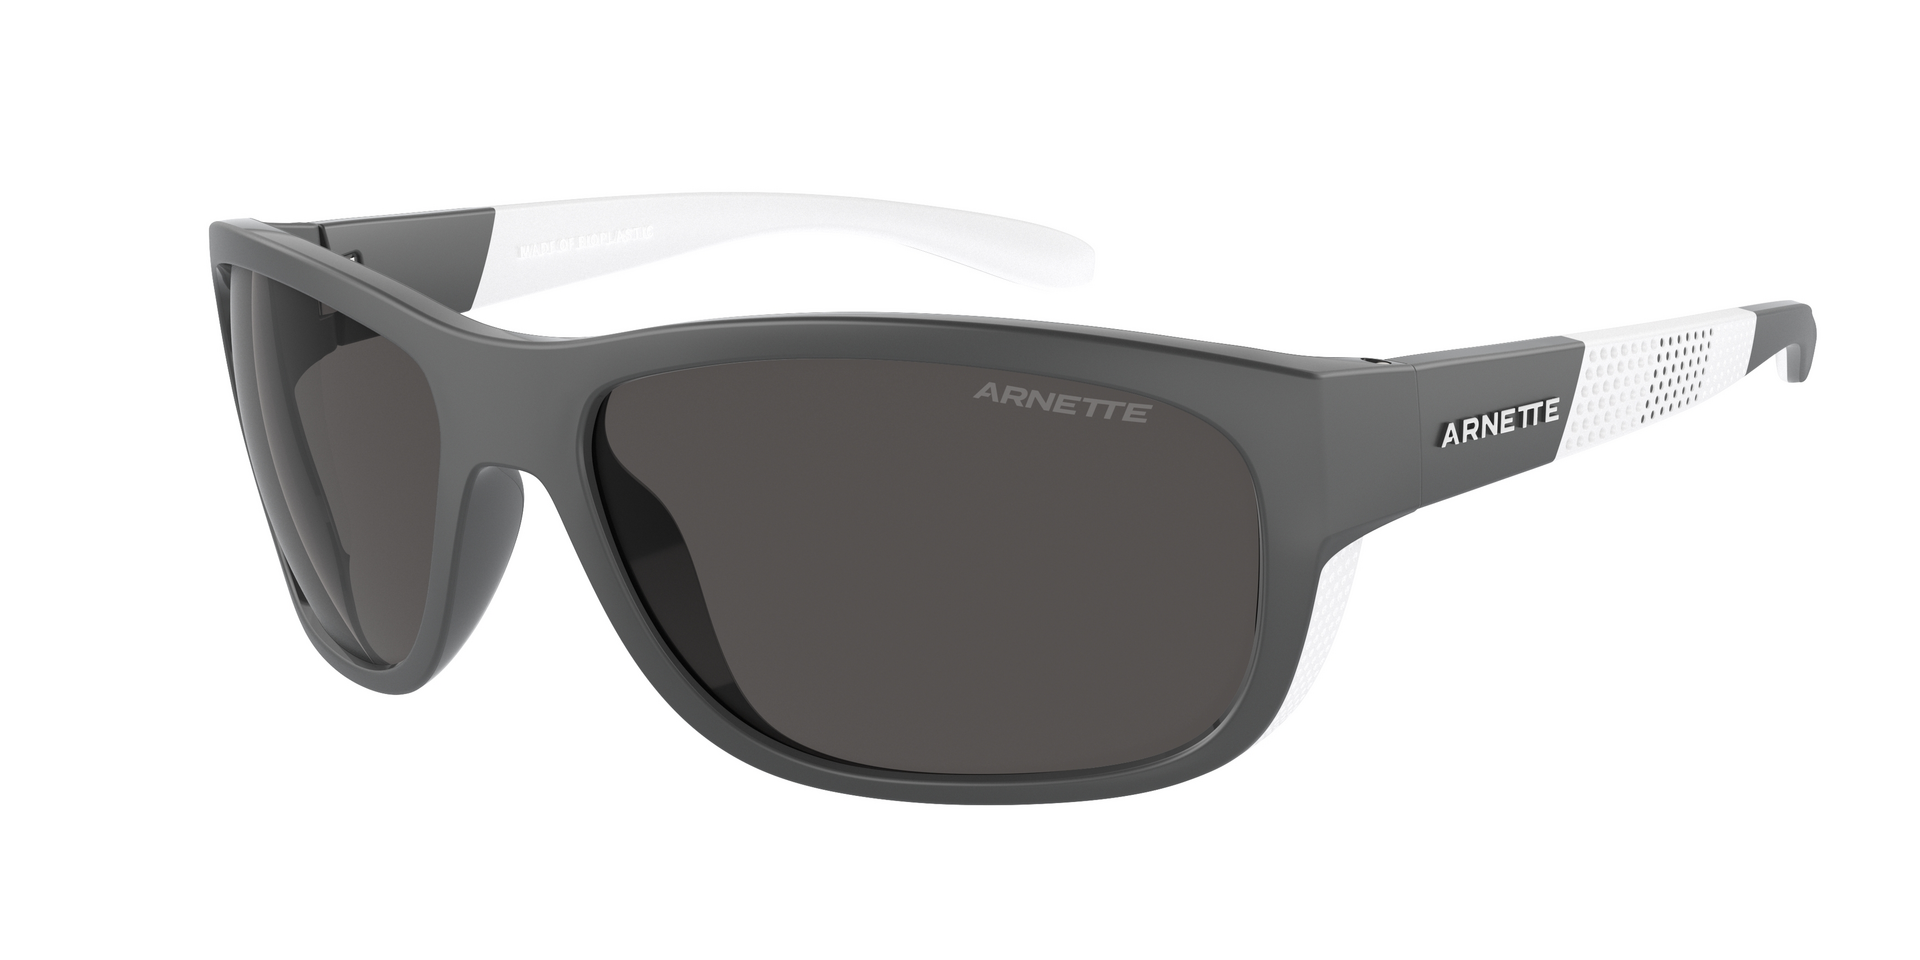 Das Bild zeigt die Sonnenbrille AN4337 275422 von der Marke Arnette in schwarz/weiß.